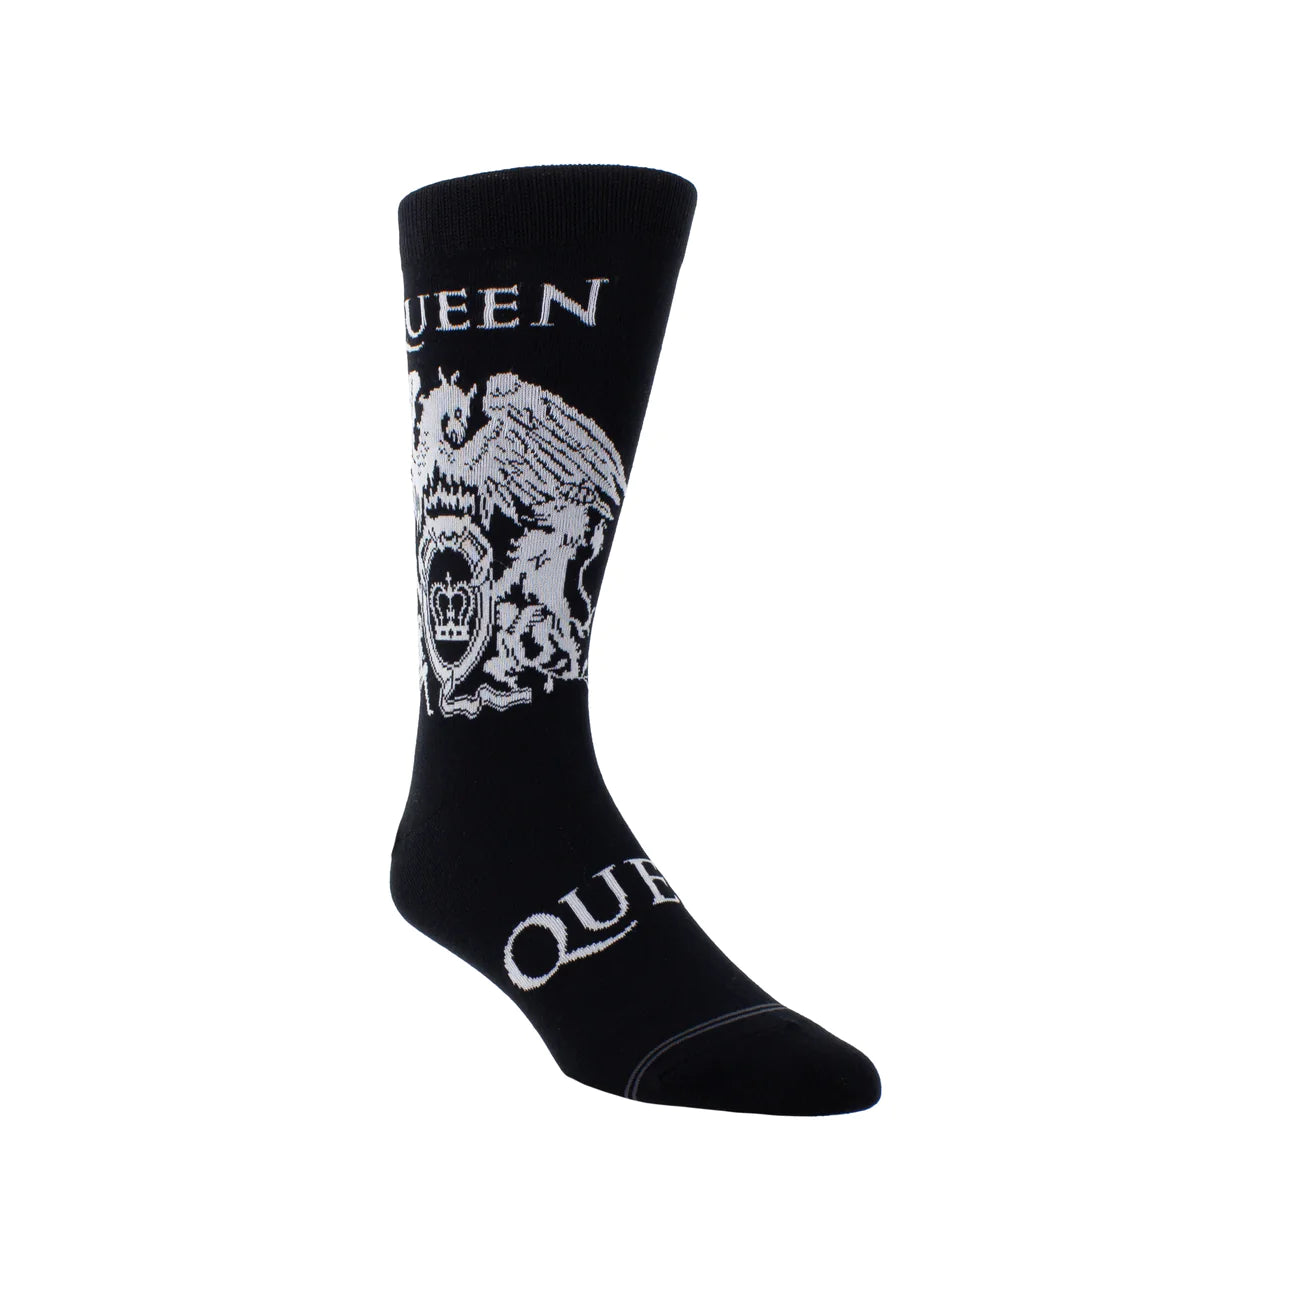 Queen Gift Boxed Crew Socks